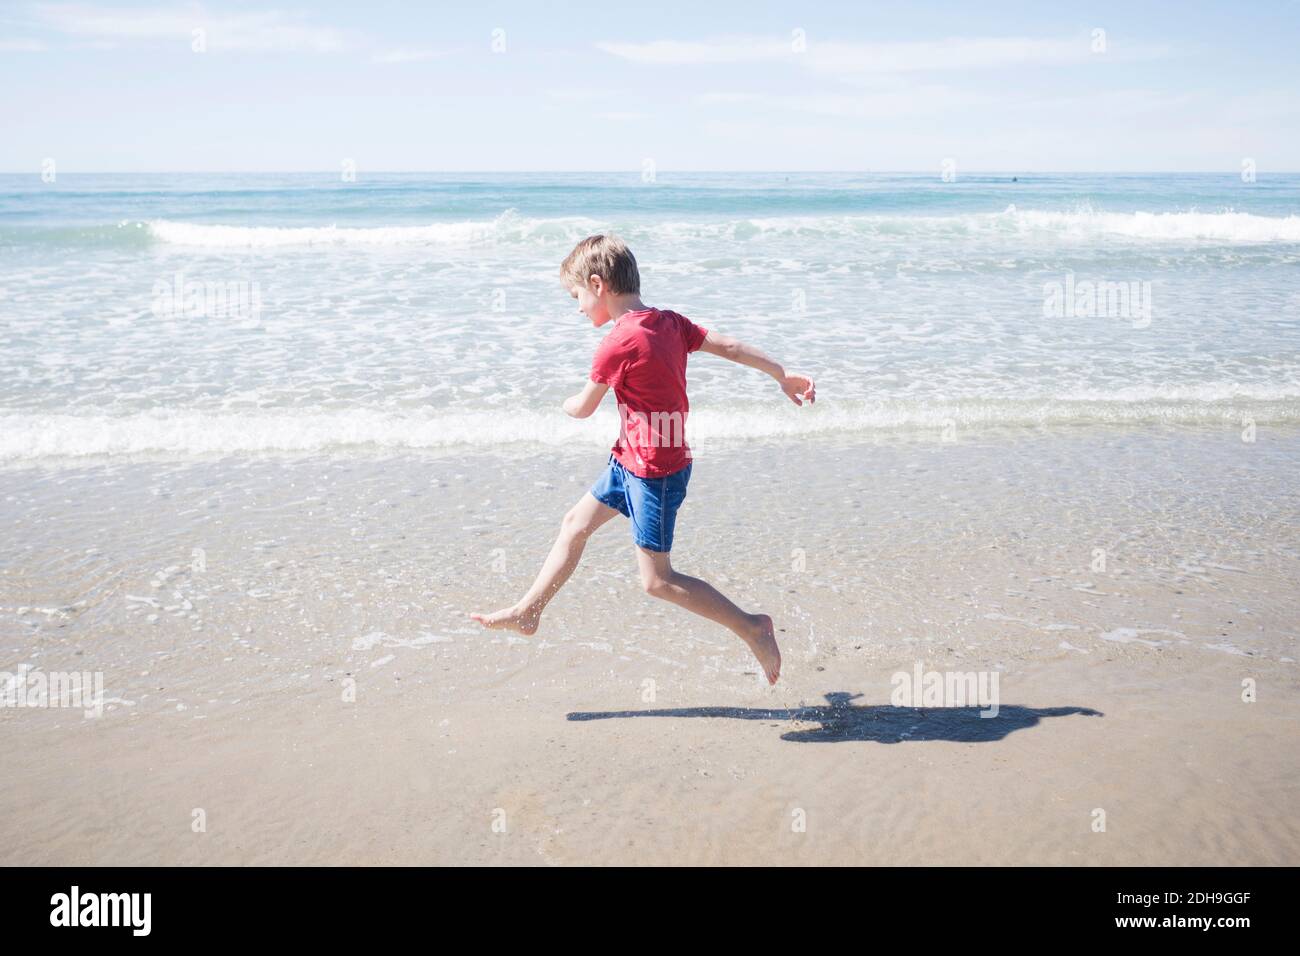 Vue latérale complète d'un garçon qui court à la plage jour ensoleillé Banque D'Images